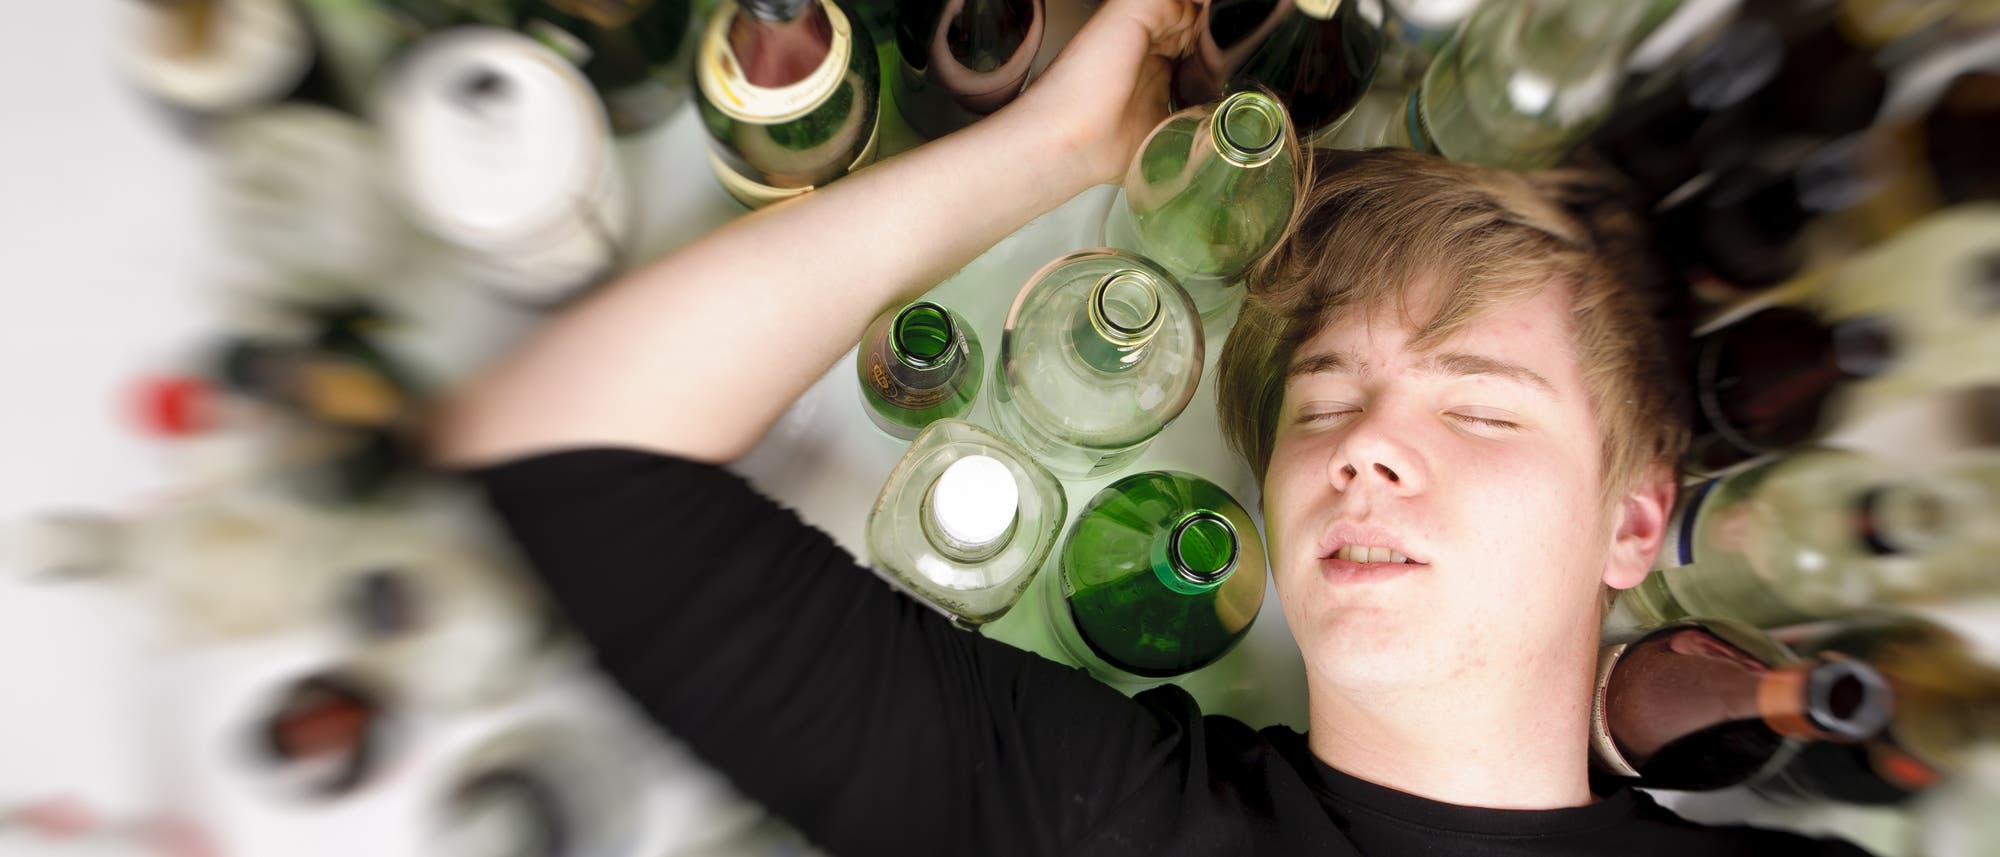 Ein männlicher Jugendlicher liegt im Rausch schlafend neben vielen leeren Flaschen auf dem Boden.